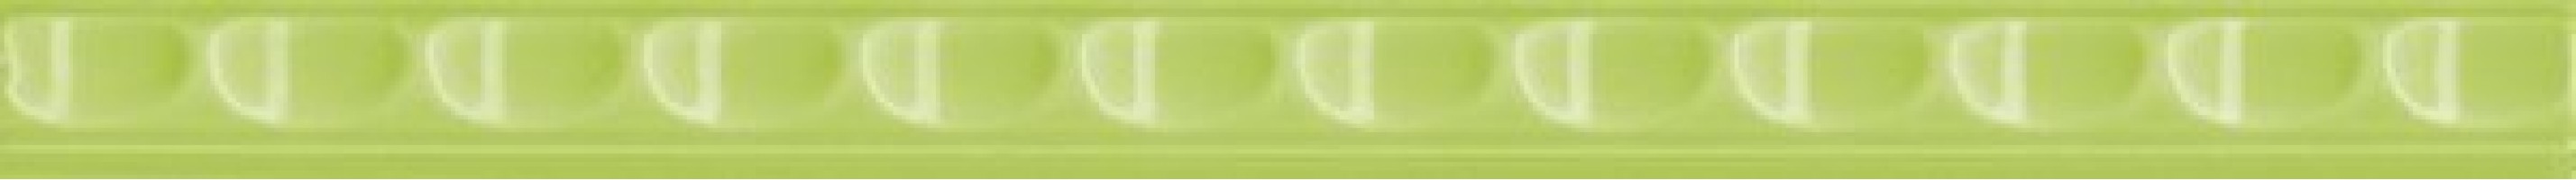 Бордюр Нефрит-Керамика Кураж-2 Трамплин салатный 1.3x20 30-178-30-03-40